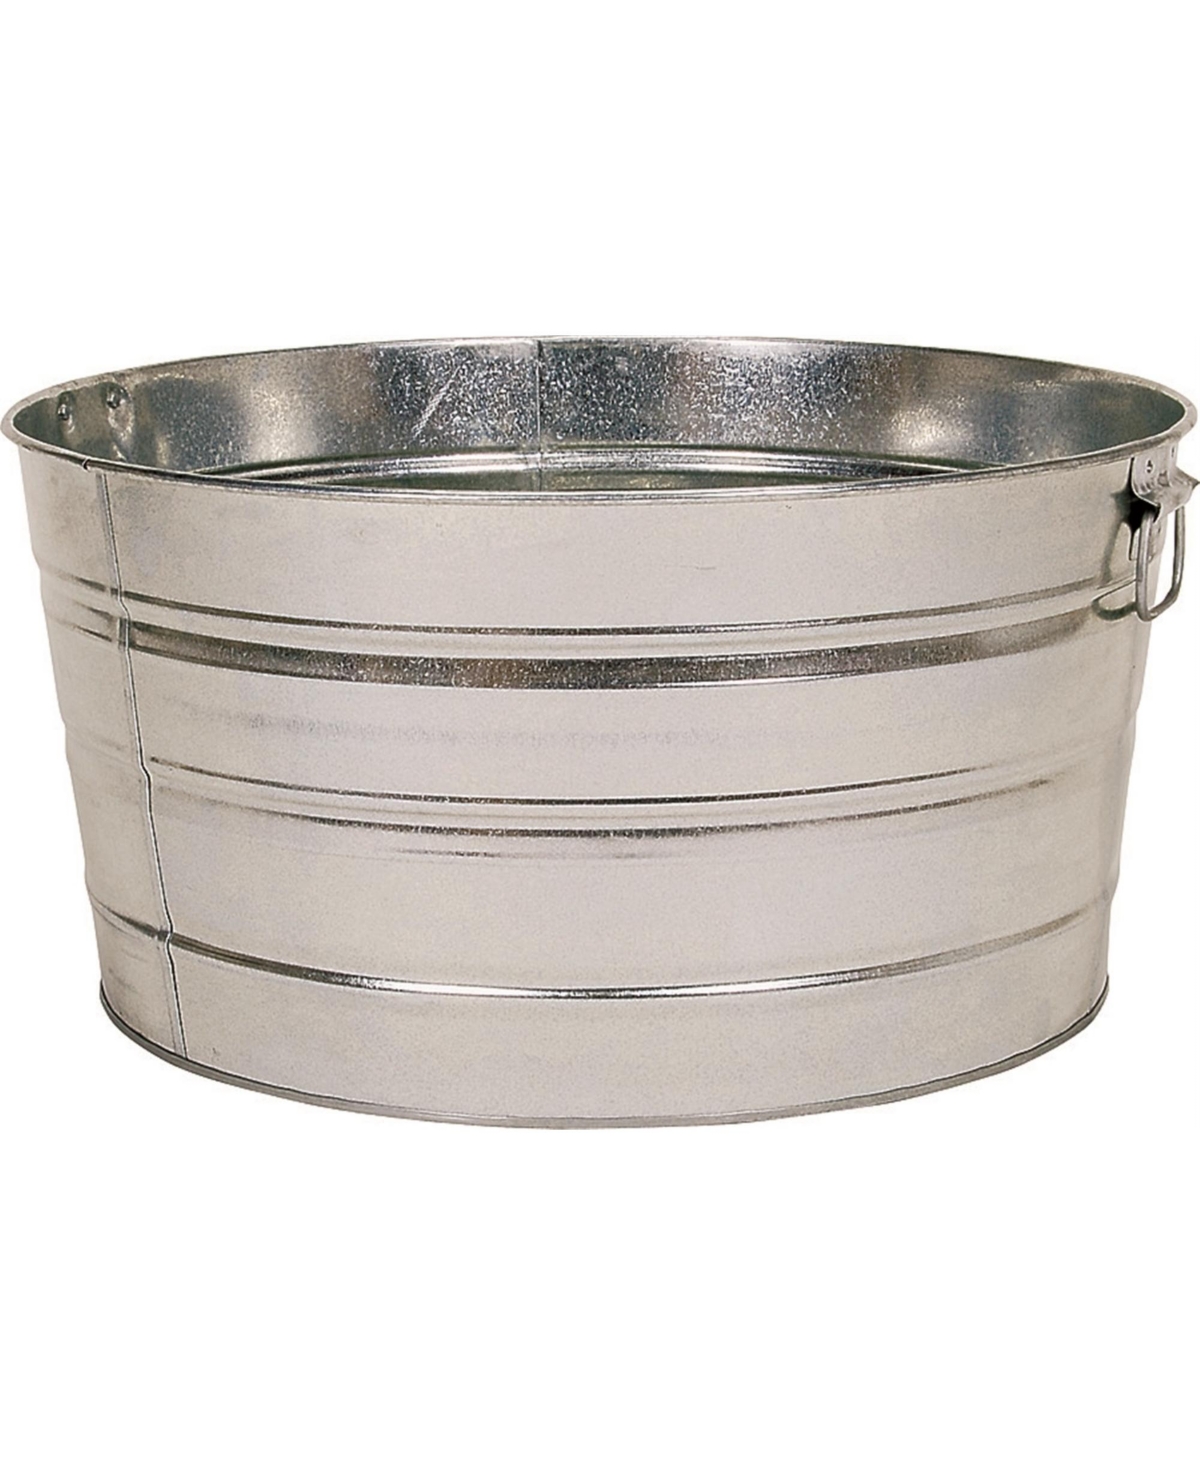 Multi-purpose Round Galvanized Steel Tub, 15 Gal - Silver - Silver